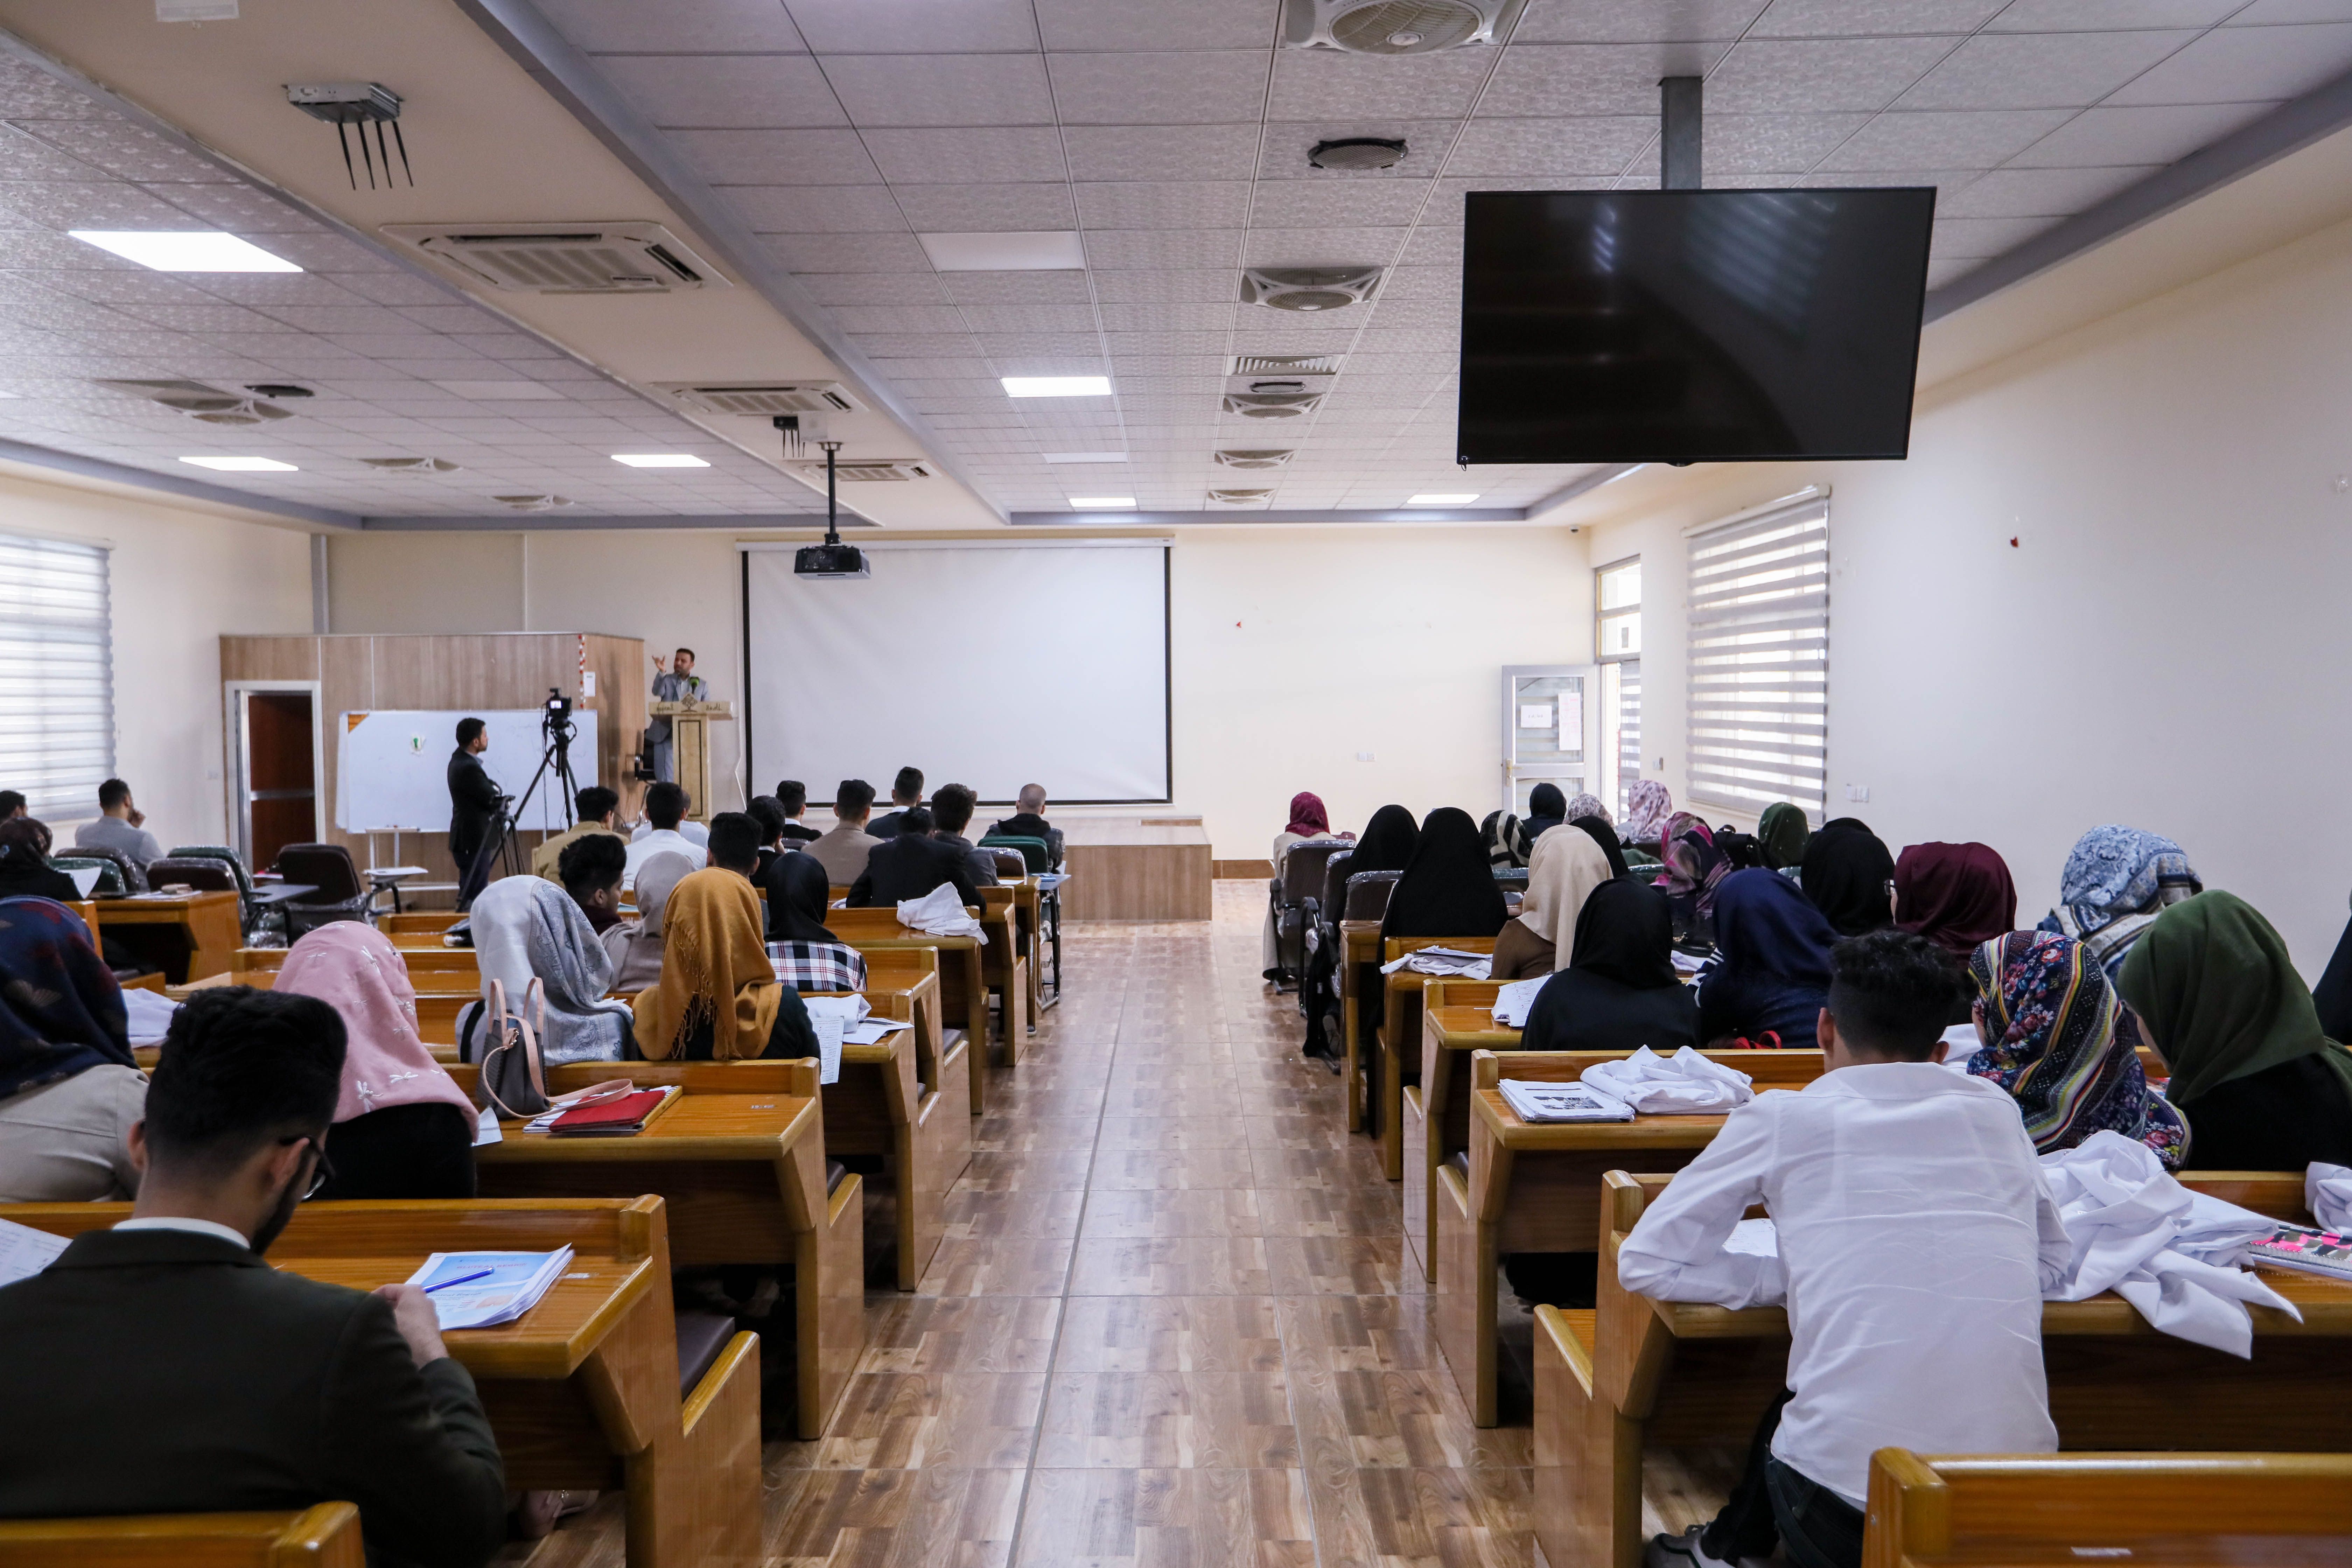 جانب من الدروس القرآنية التي يقيمها معهد القرآن الكريم في جامعة العميد - كلية الطب ضمن المشروع القرآني في الجامعات والمعاهد العراقية